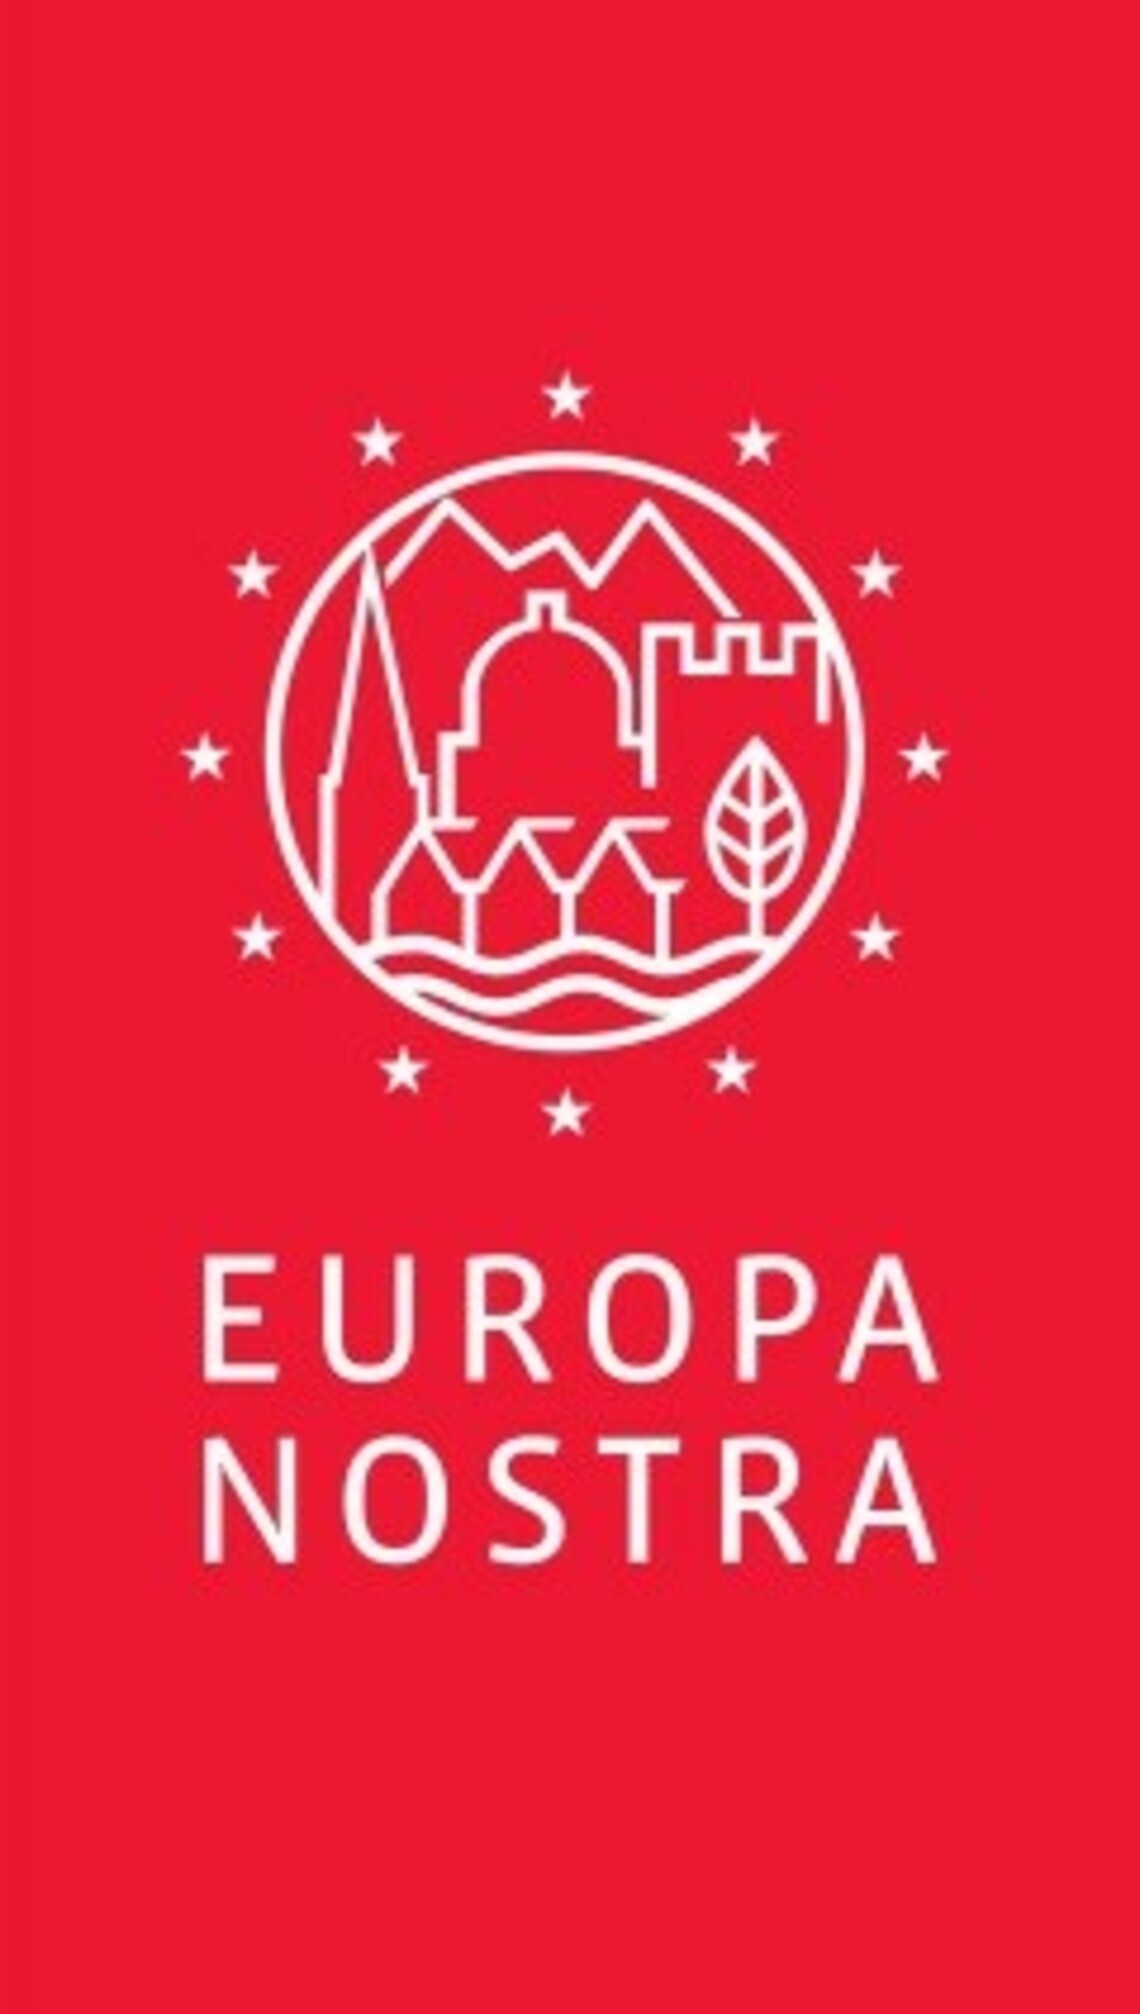 Europa nostra logo